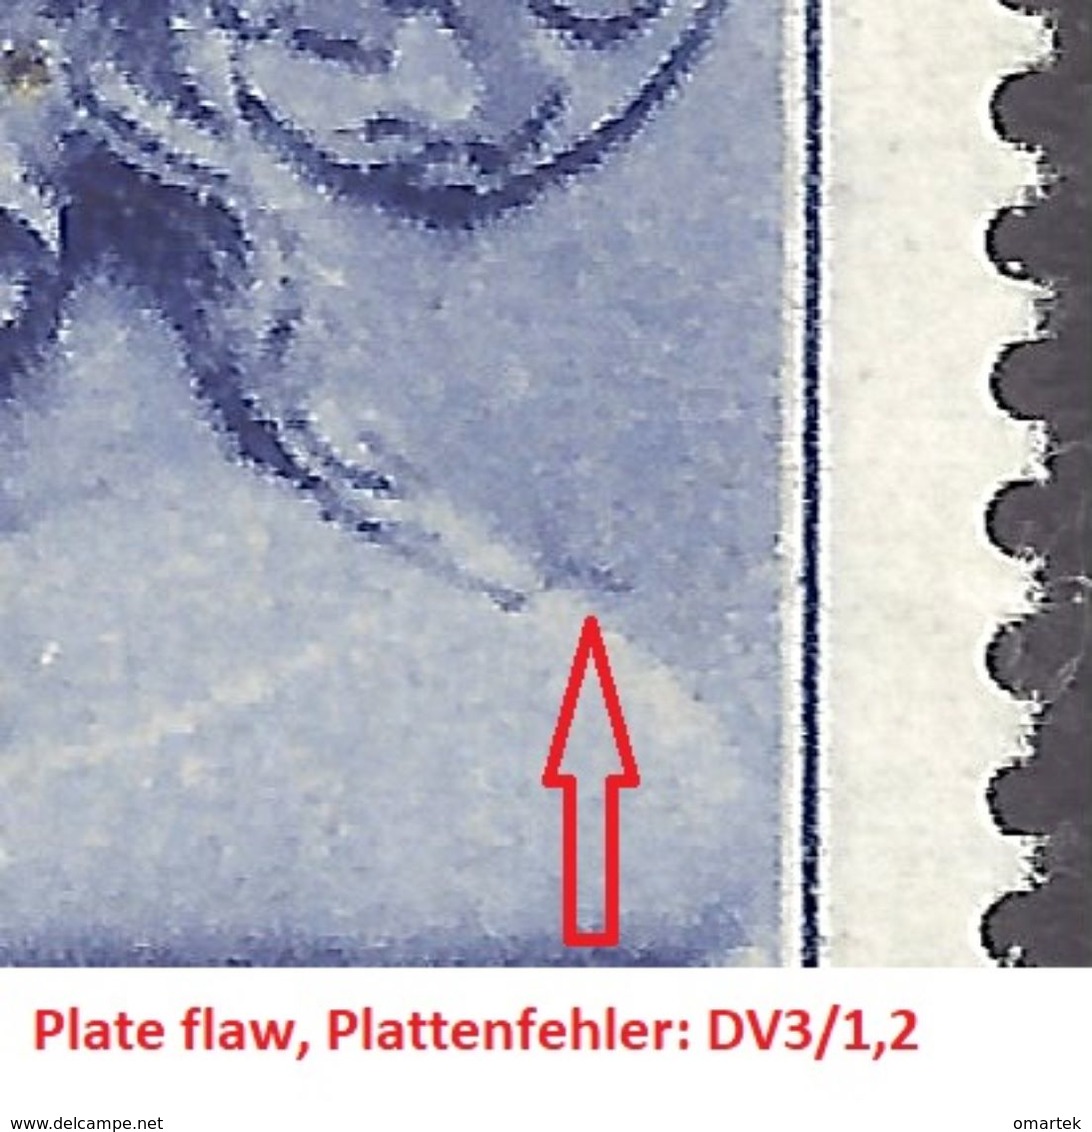 Bohemia & Moravia Böhmen Und Mähren 1943 MNH ** Mi 116 Sc B17 Jan Lucembursky. Winter Relief. Plate Flaw DV3/1,2. - Ungebraucht